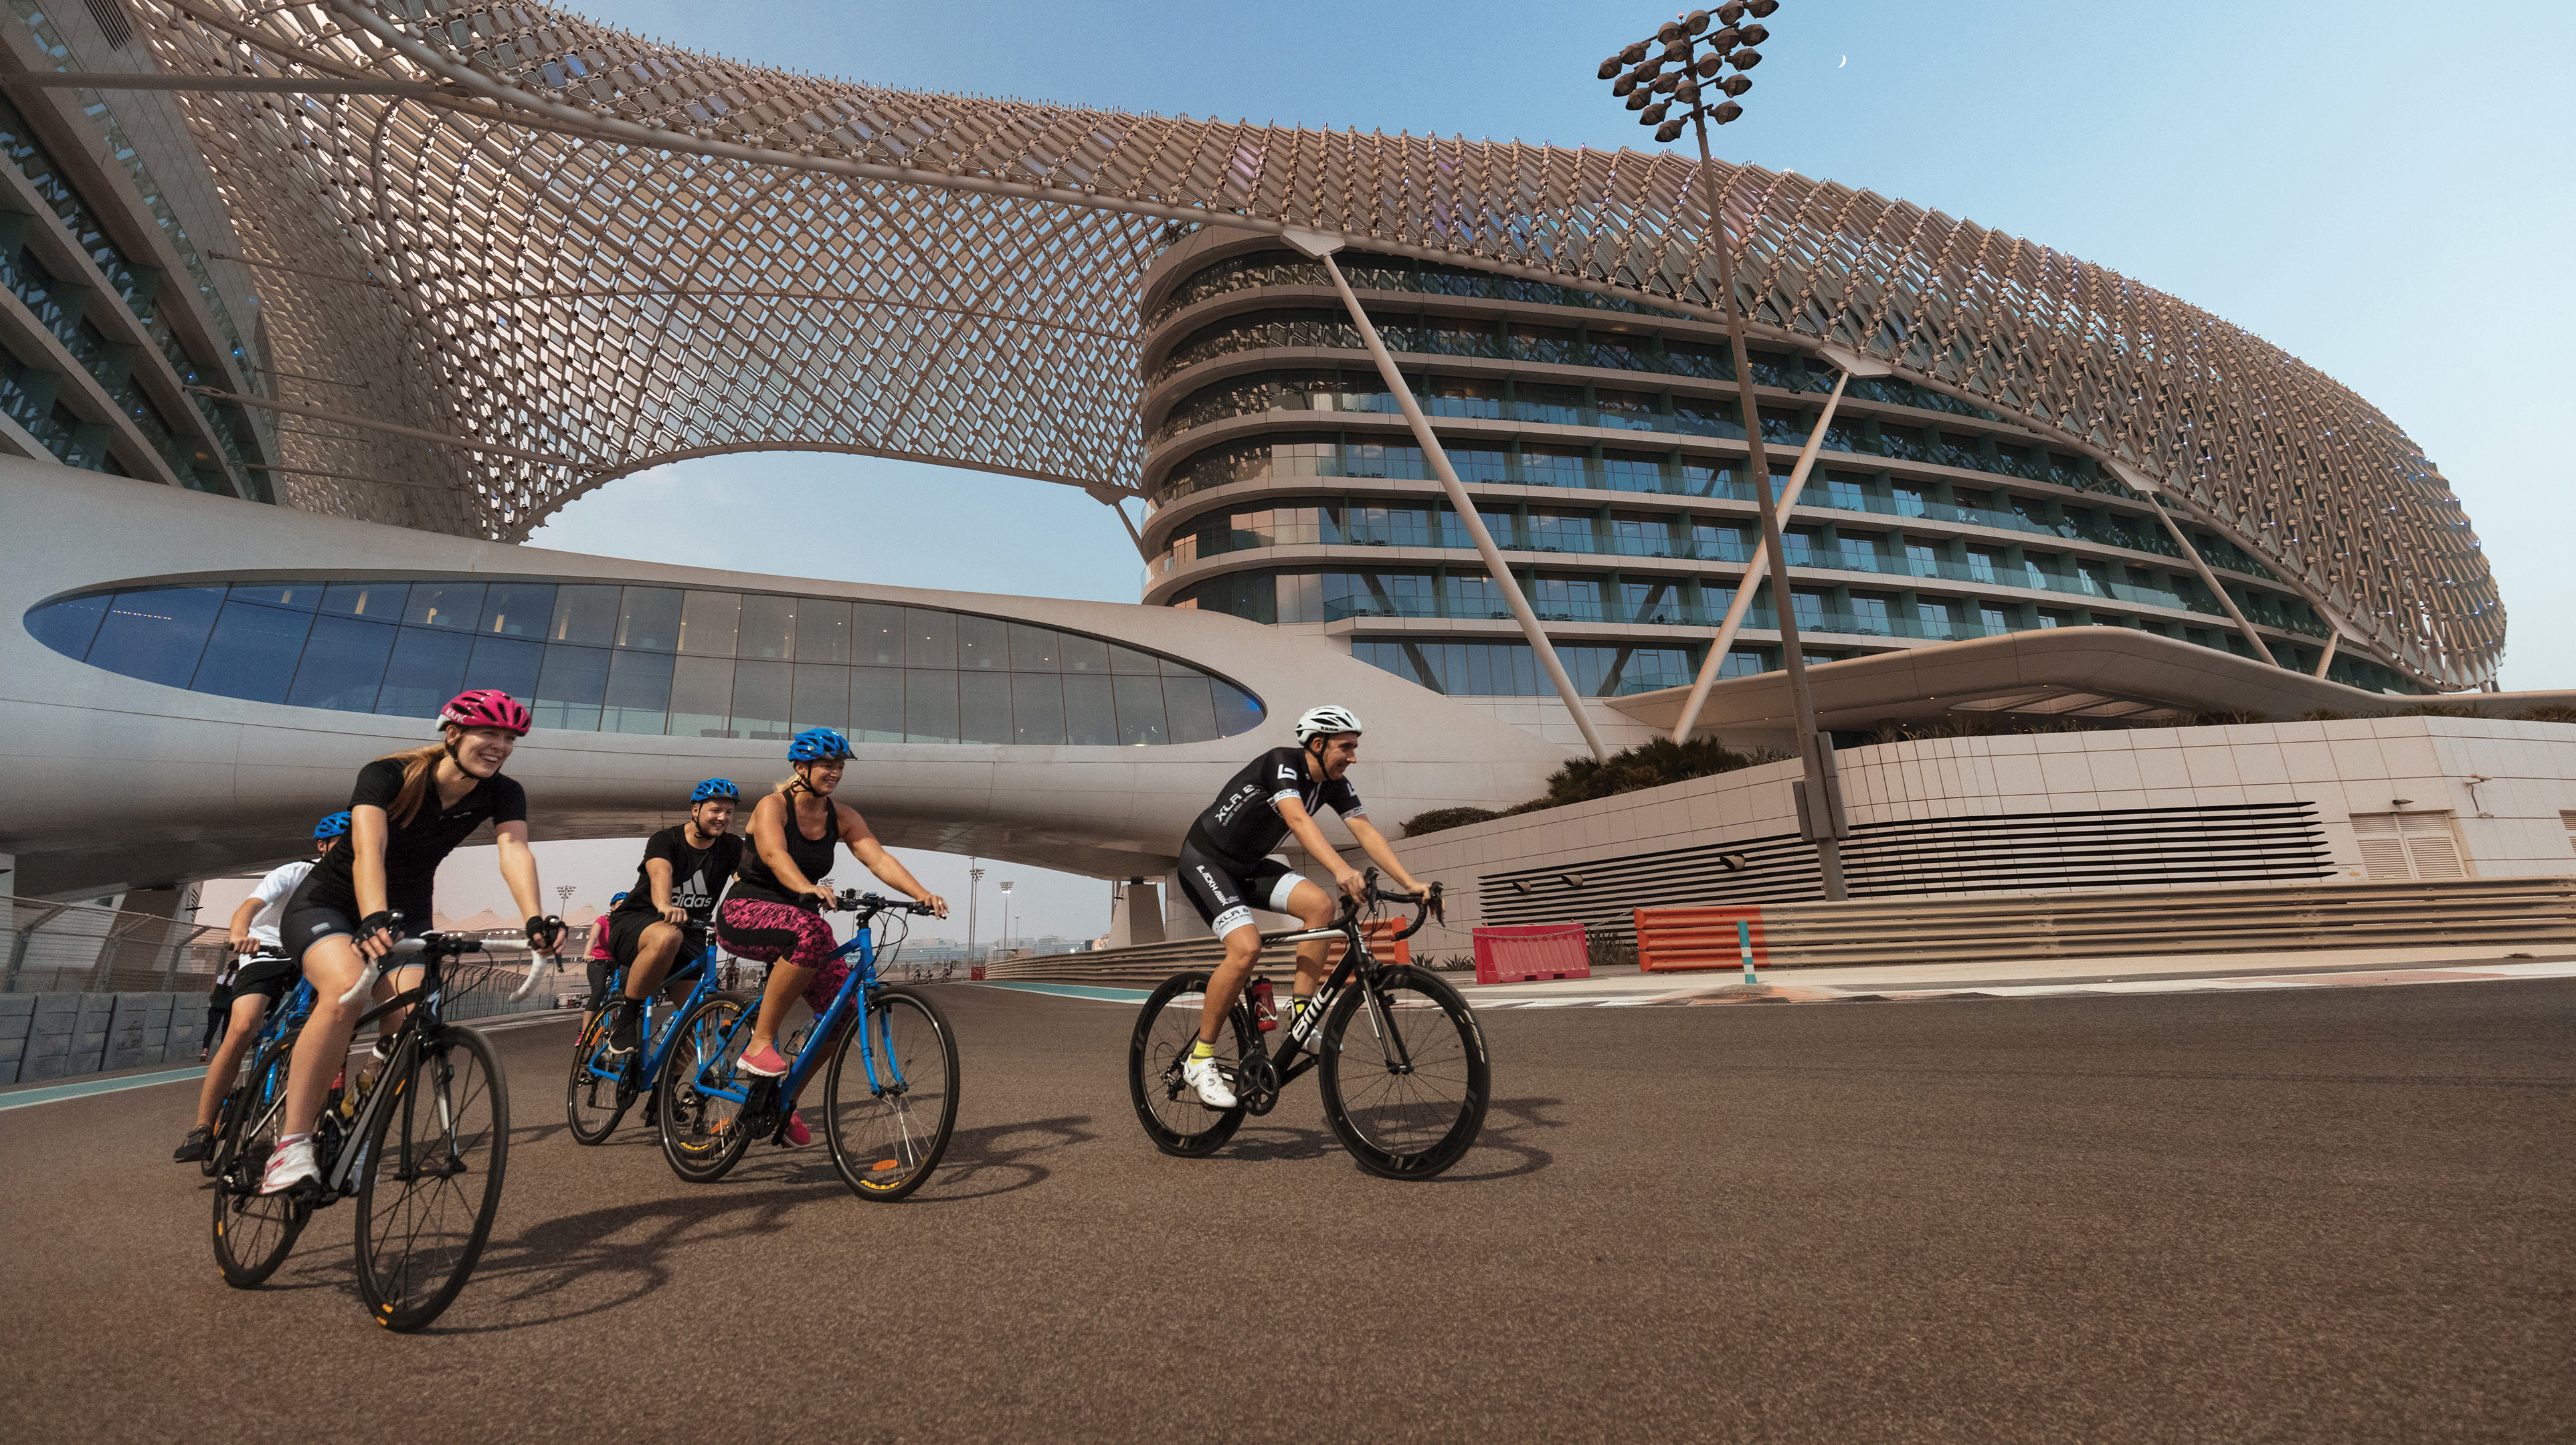 Cycling on Yas Marina Circuit in Abu Dhabi